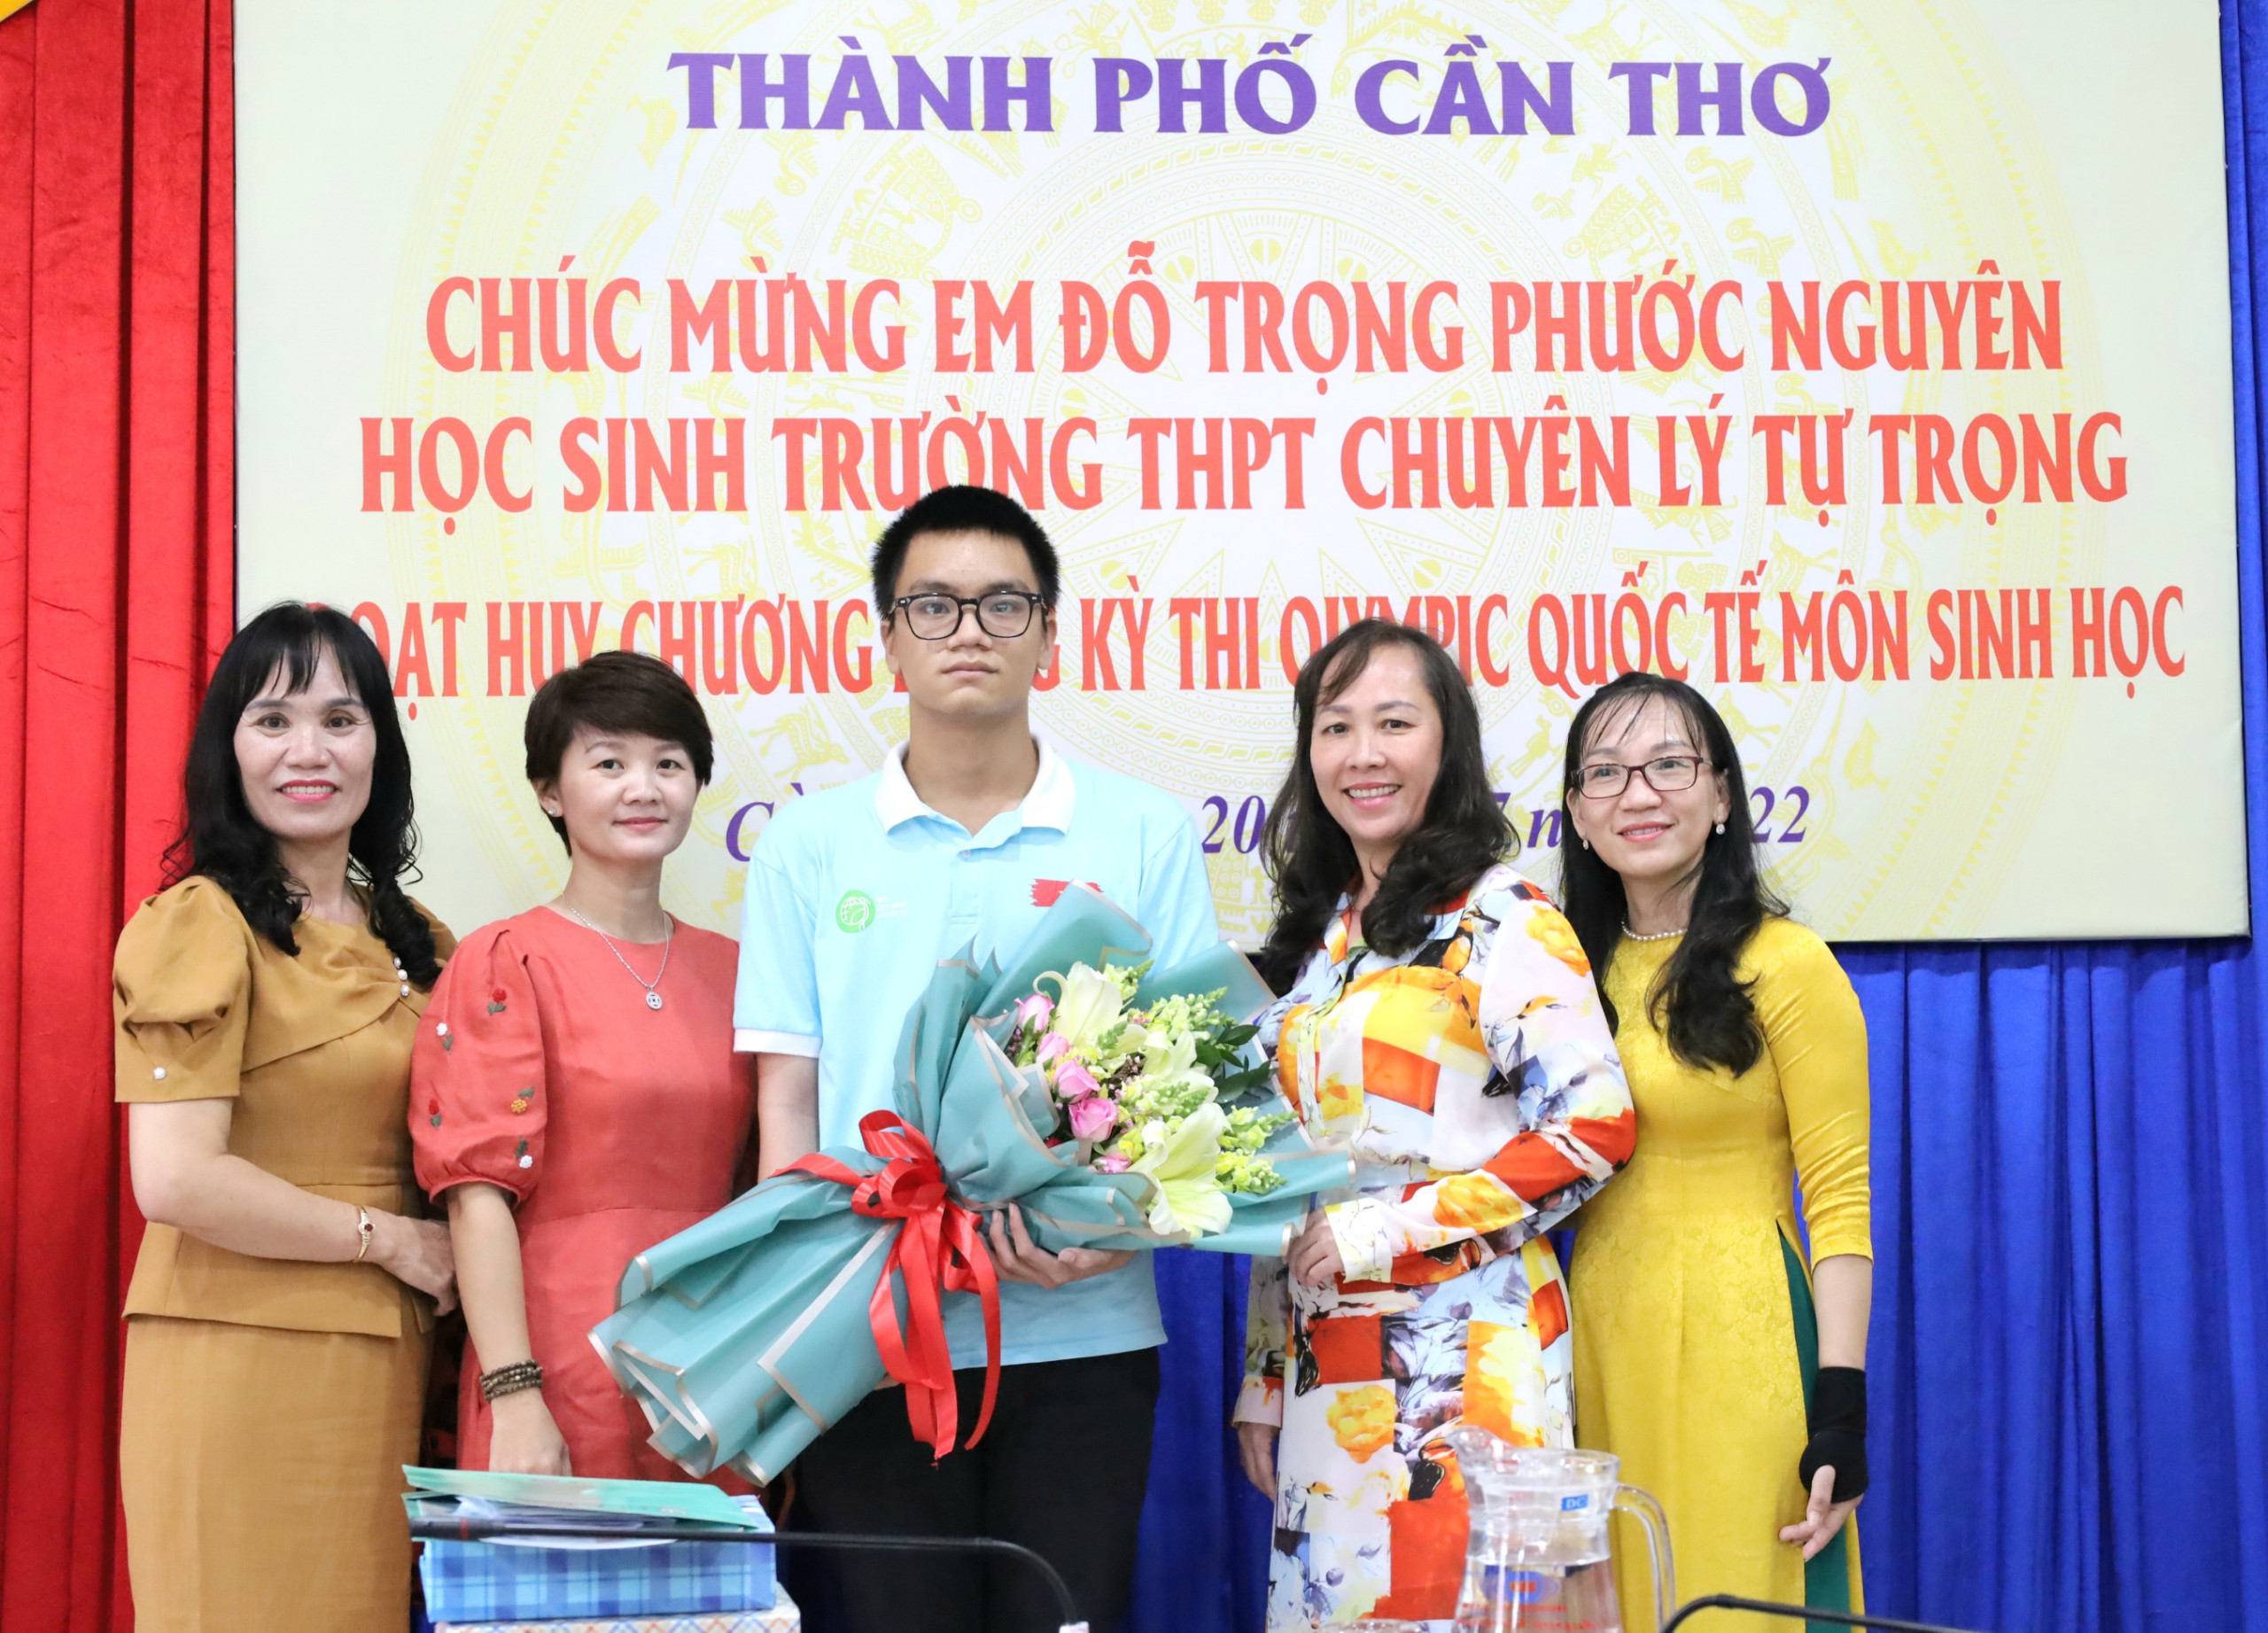 Các đồng nghiệp chúc mừng cô Đinh Thị Thảo (bìa trái) - Hiệu trưởng Trường TH Ngô Quyền, quận Ninh Kiều là mẹ em Đỗ Trọng Phước Nguyên.